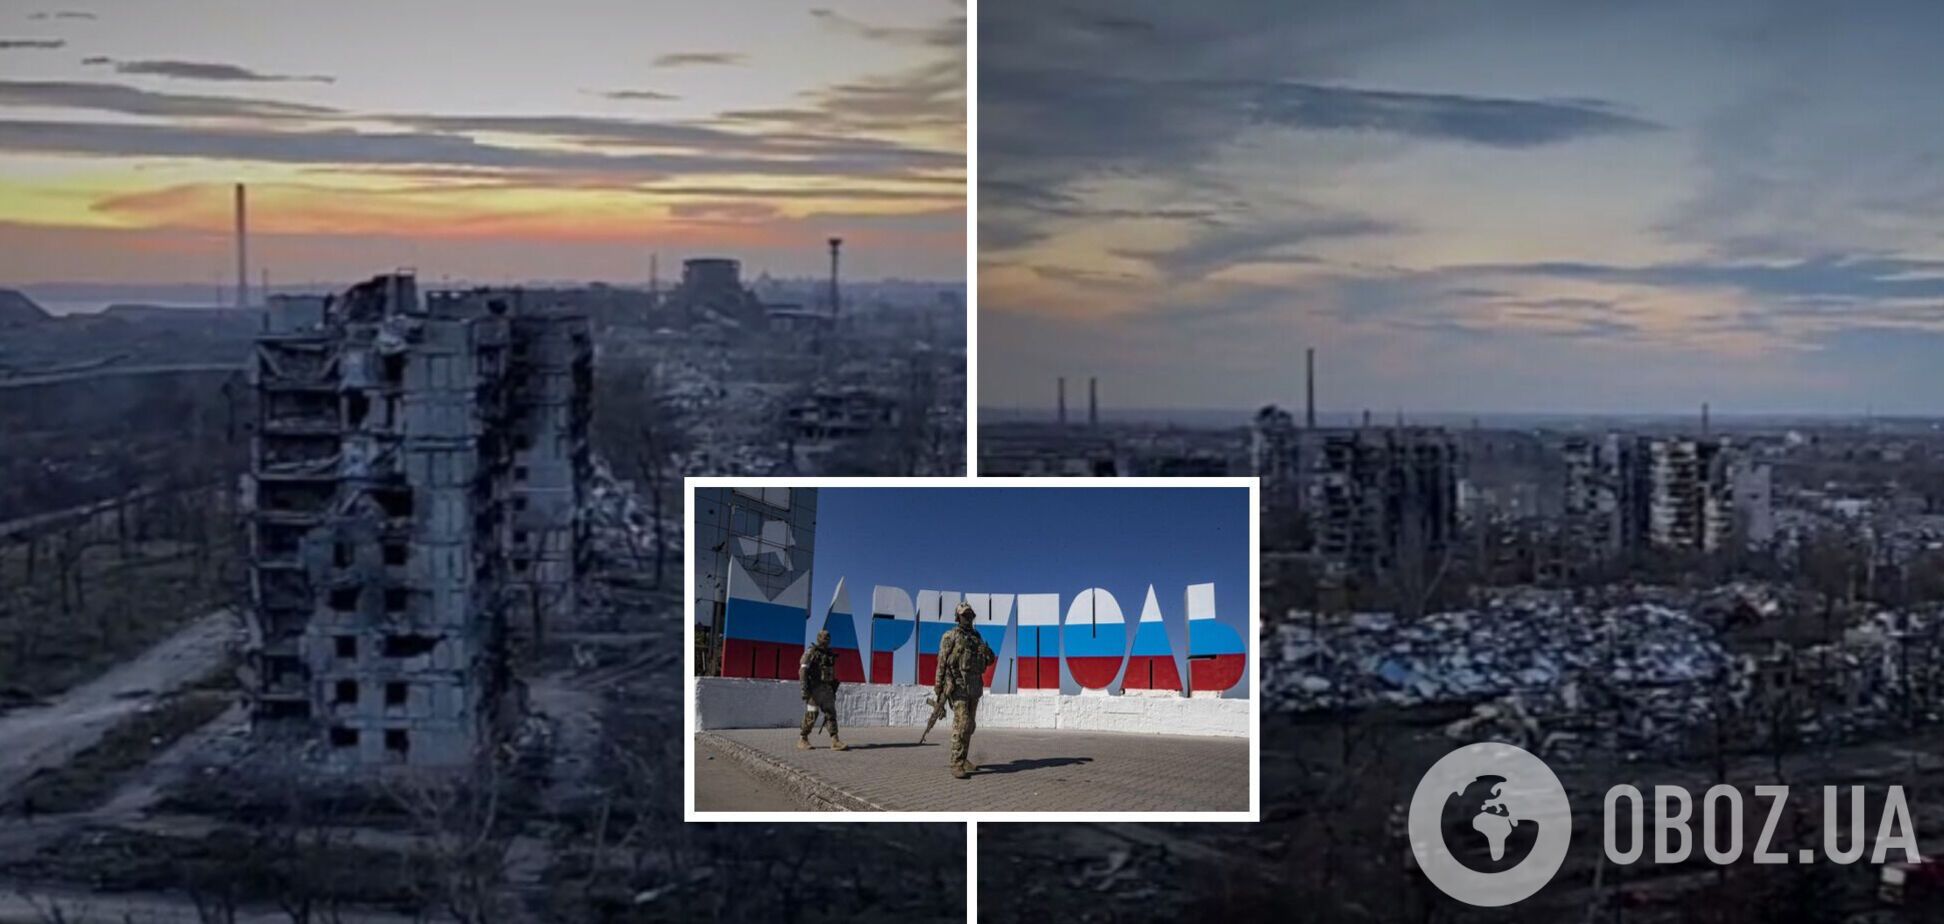 Так сейчас выглядит Мариуполь: появилось апокалиптическое видео из разрушенного города, где оккупанты сносят дома